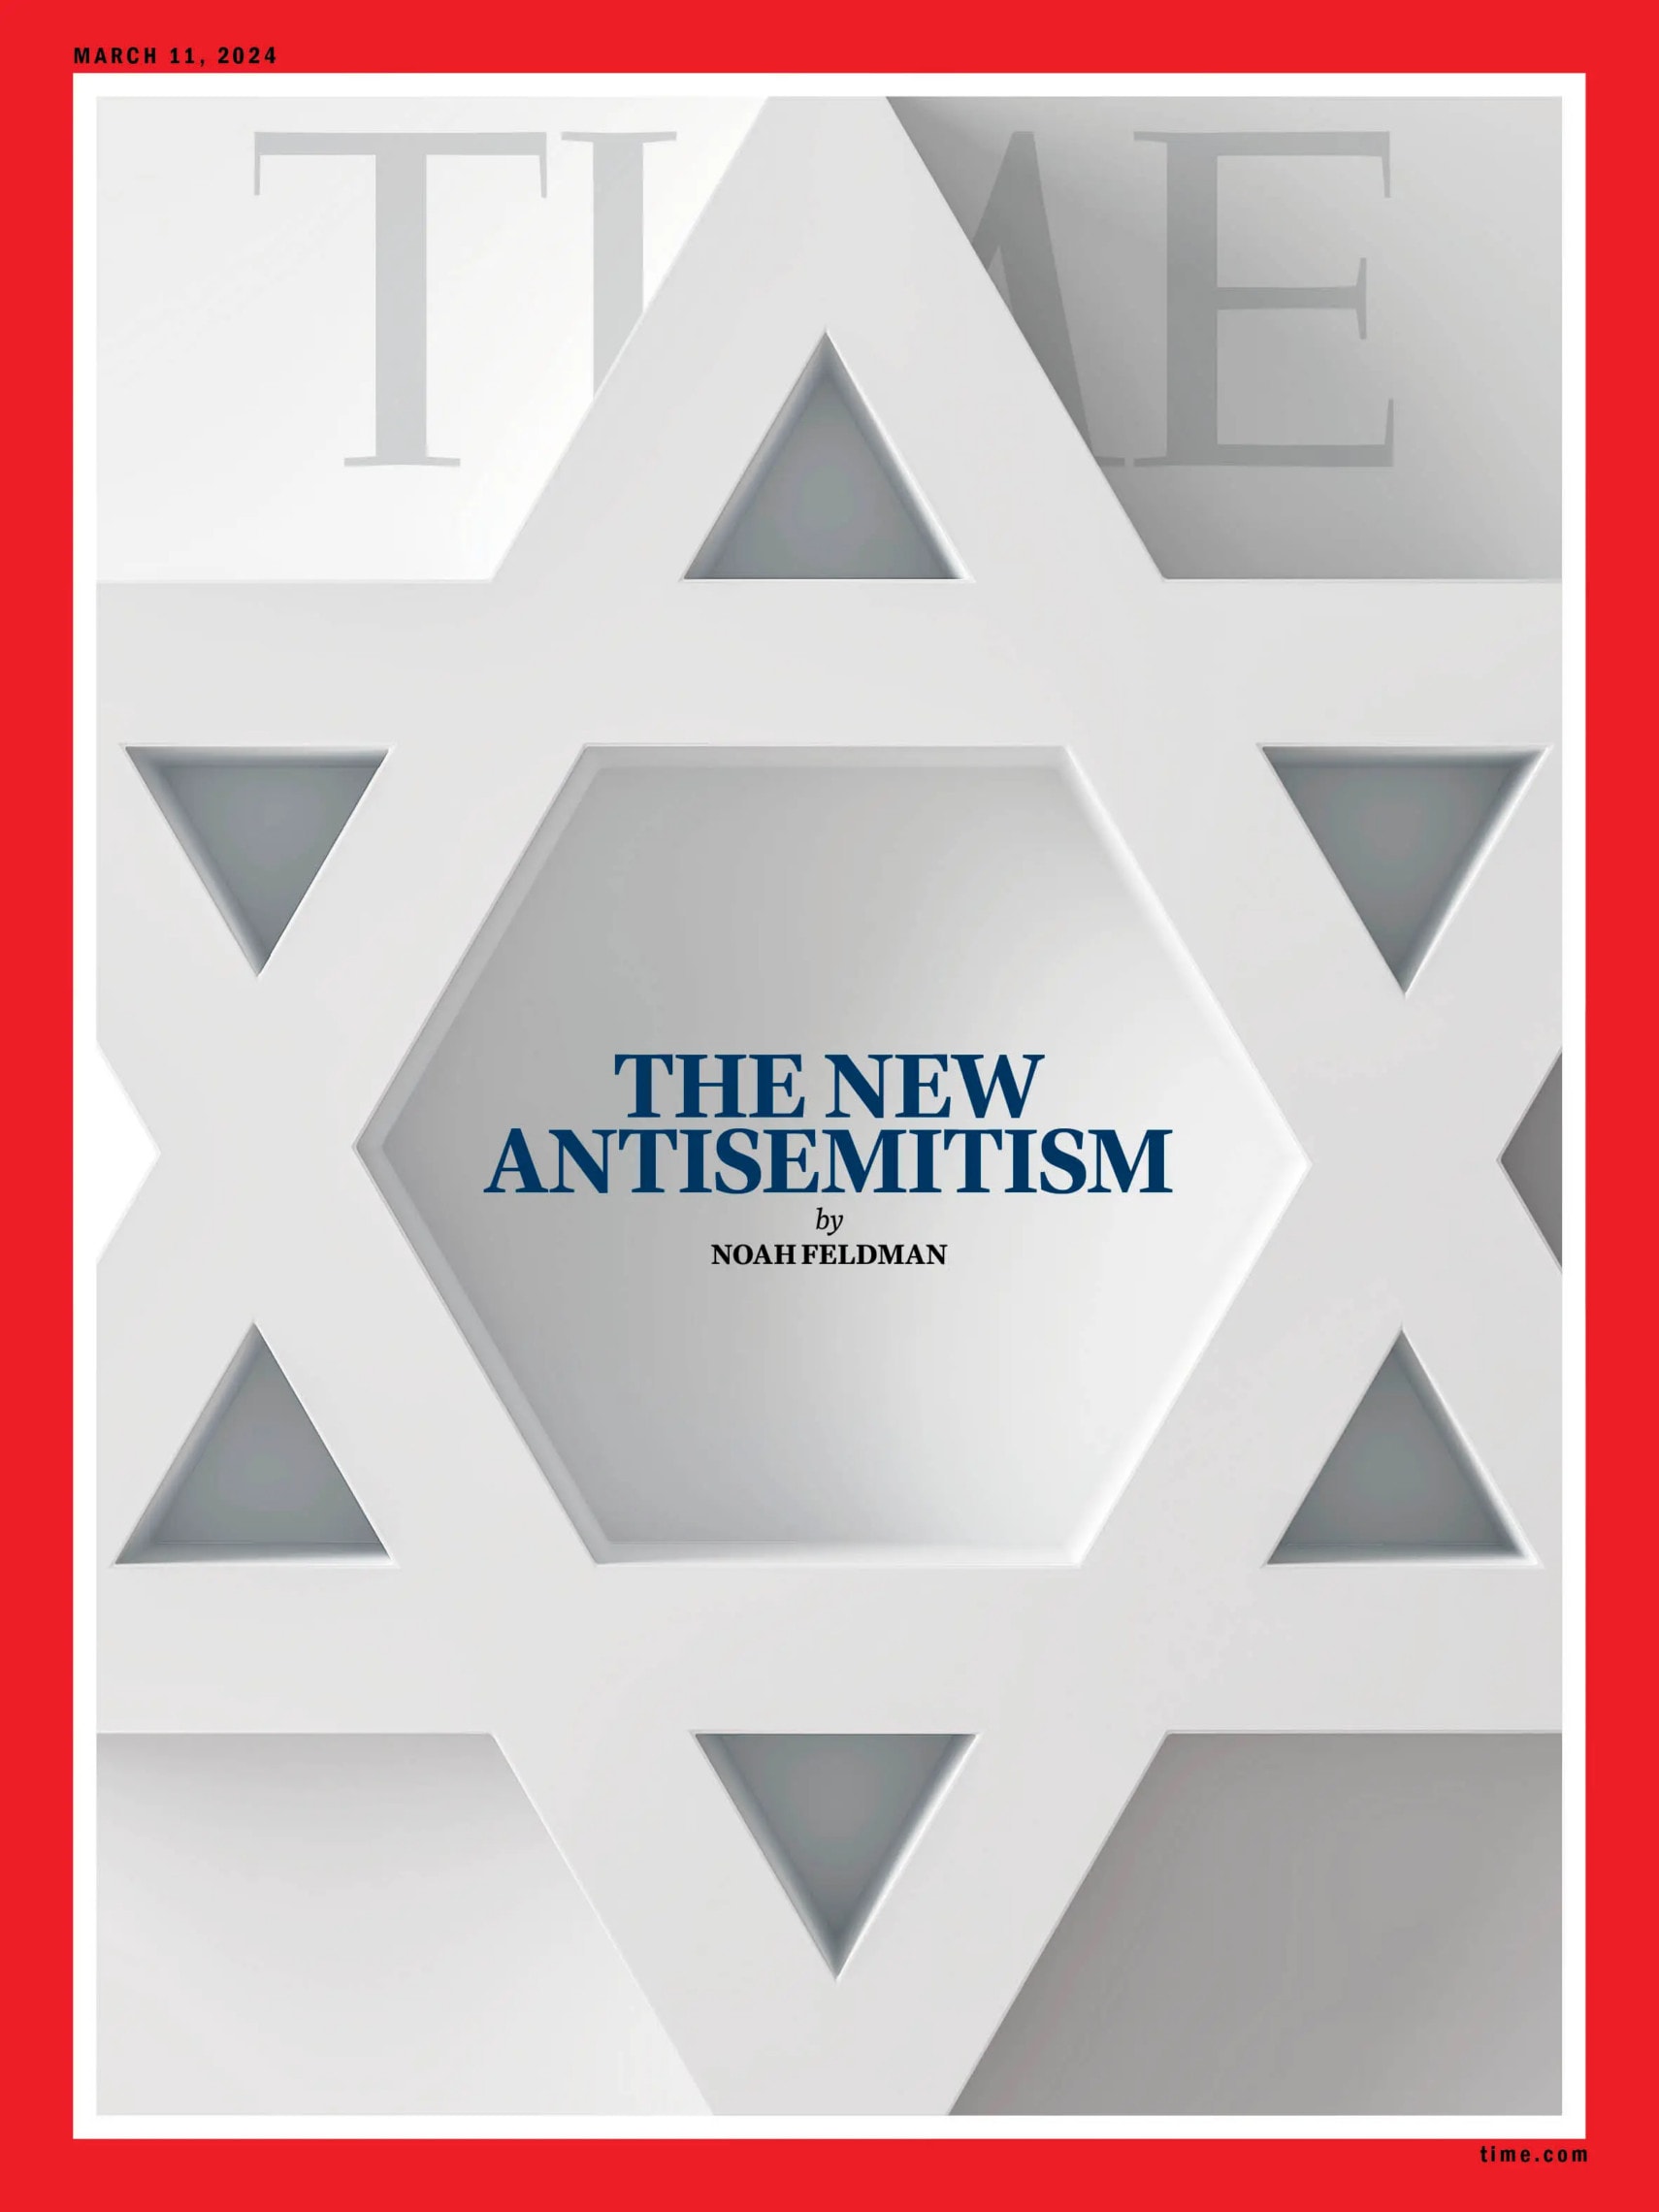 שער המגזין &quot;טיים&quot;, גיליון 11 במרץ 2024, המוקדש לאנטישמיות החדשה (צילום: Time Magazine)